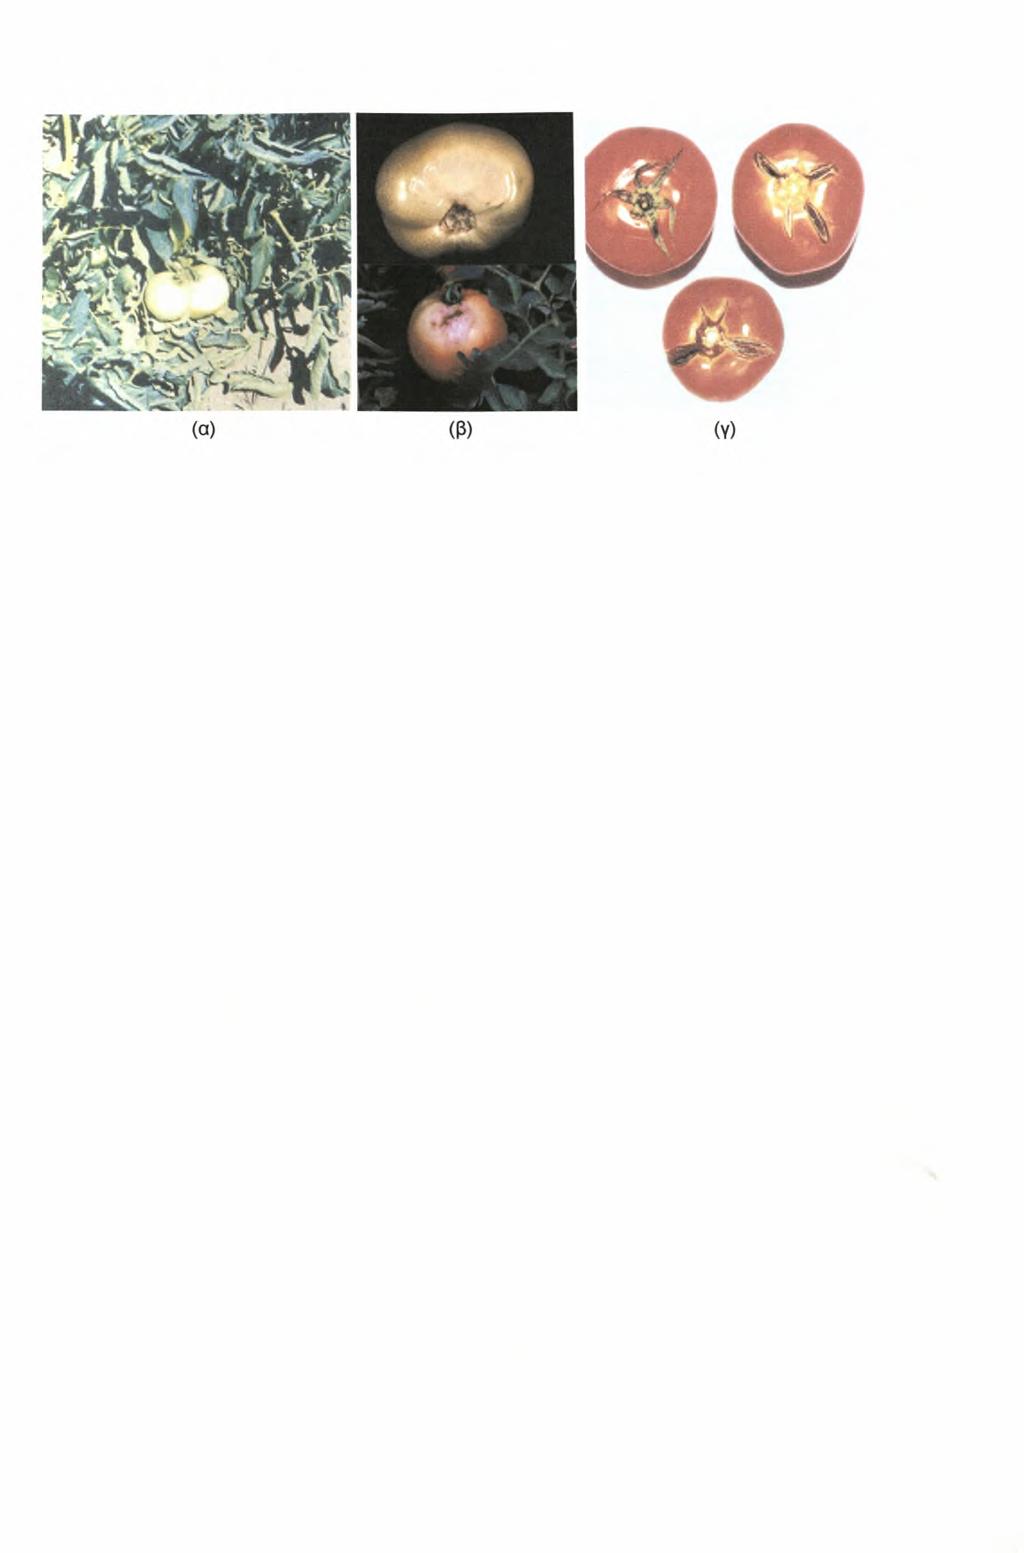 Υπαίθρια Καλλιέργεια Τοαάτας Εικόνα 1. Καρποί τομάτας με εγκαύματα (α), (β) και με σχίσιμο (γ) Μέτρα που προτείνονται για την αποφυγή του σχισίματος: α.